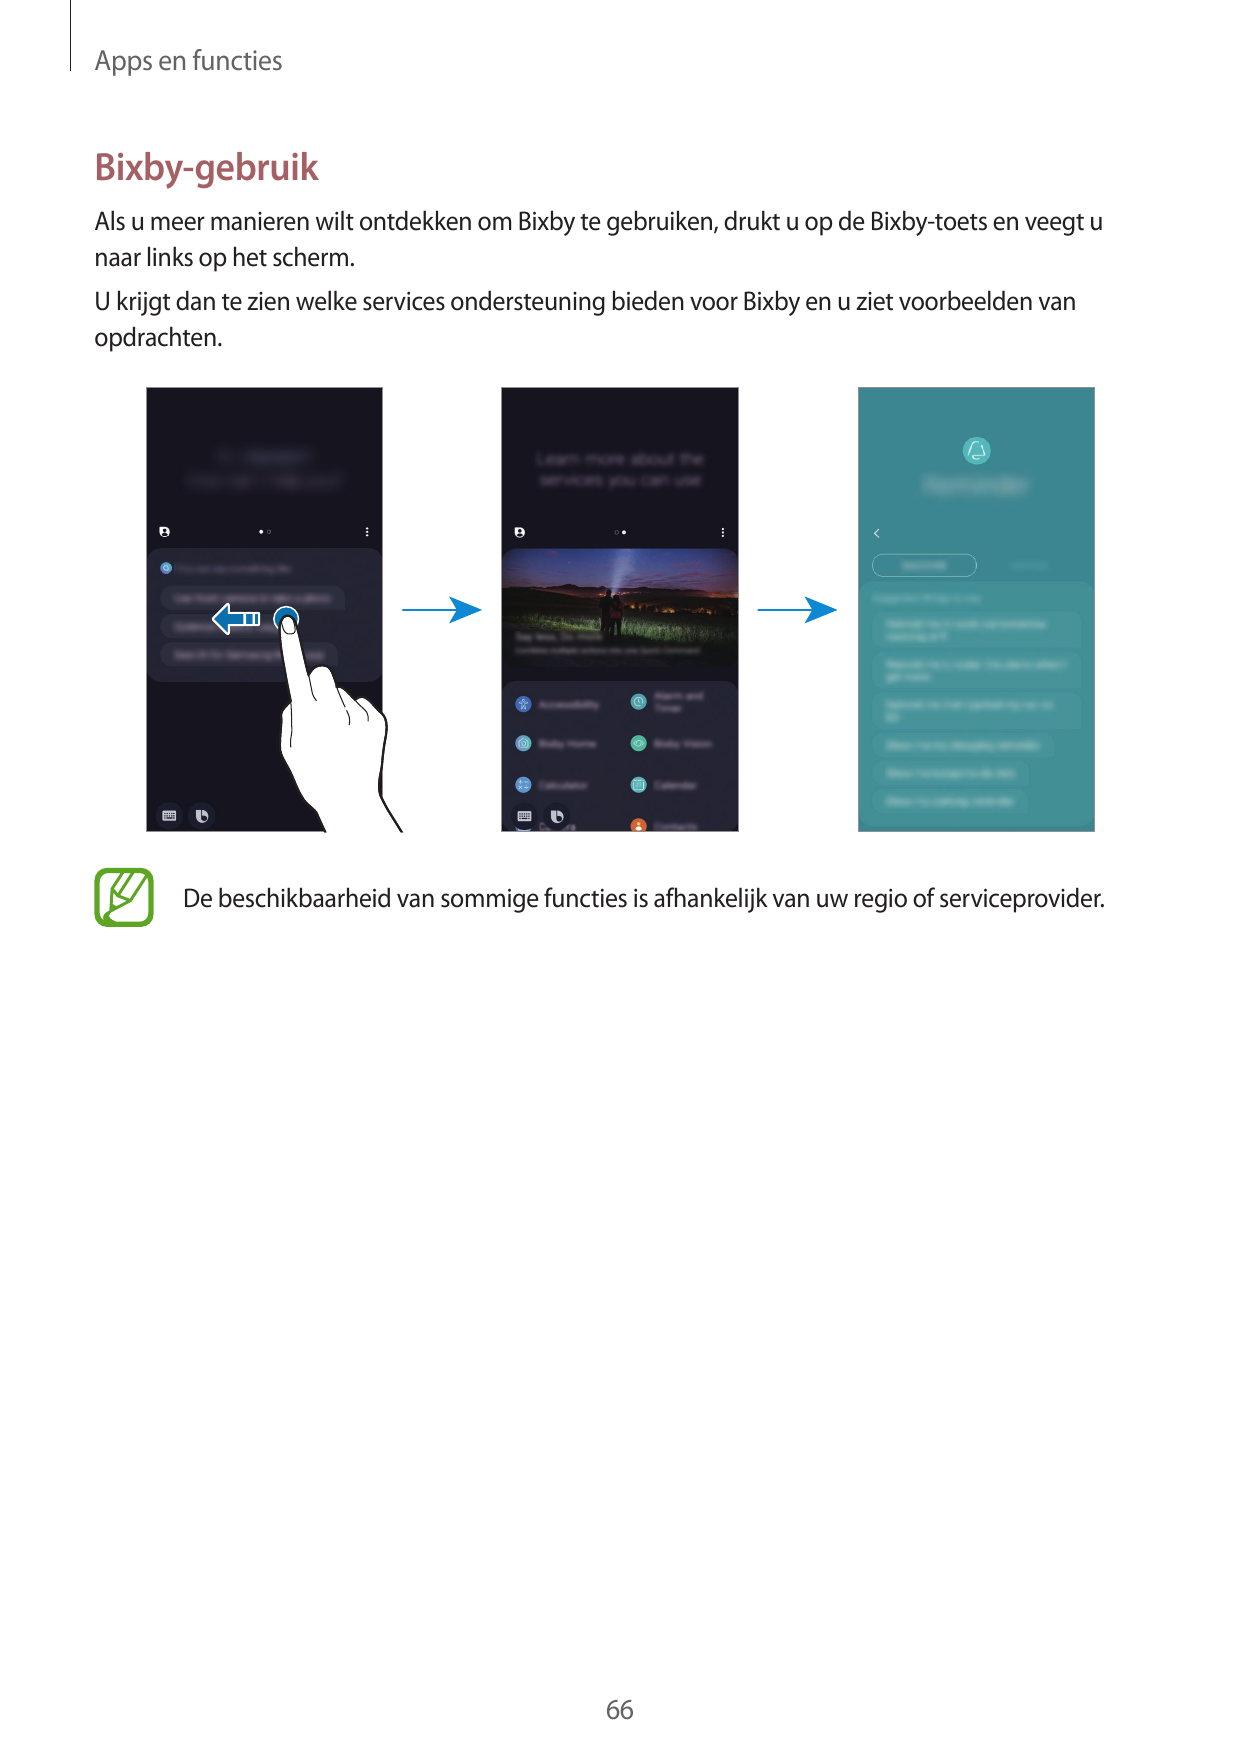 Apps en functiesBixby-gebruikAls u meer manieren wilt ontdekken om Bixby te gebruiken, drukt u op de Bixby-toets en veegt unaar 